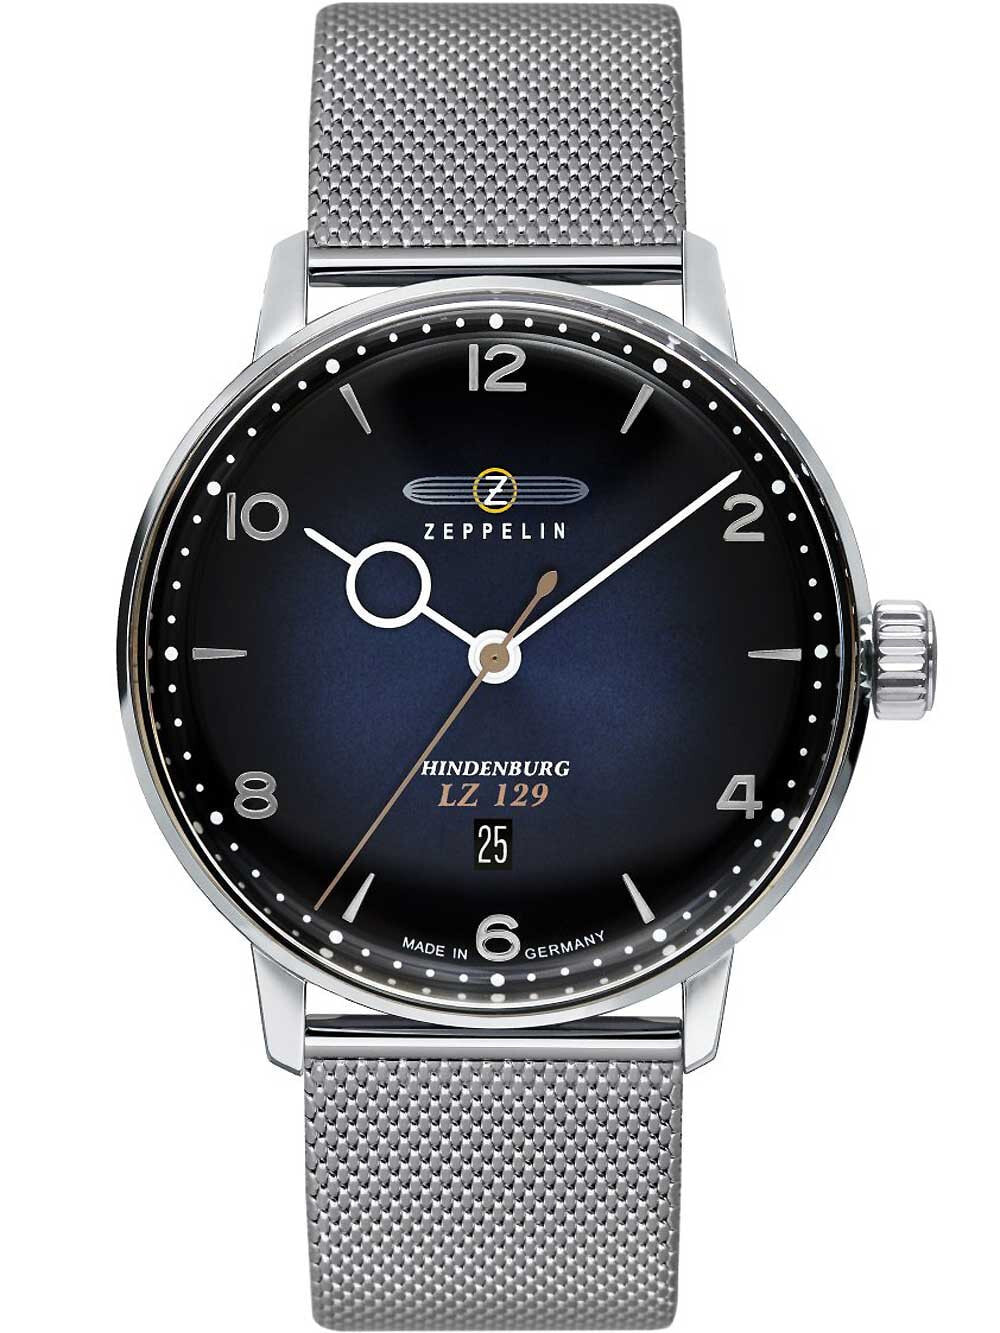 Мужские наручные часы с серебряным браслетом Zeppelin 8046M-3 Hindenburg LZ129 mens watch 40mm 5ATM